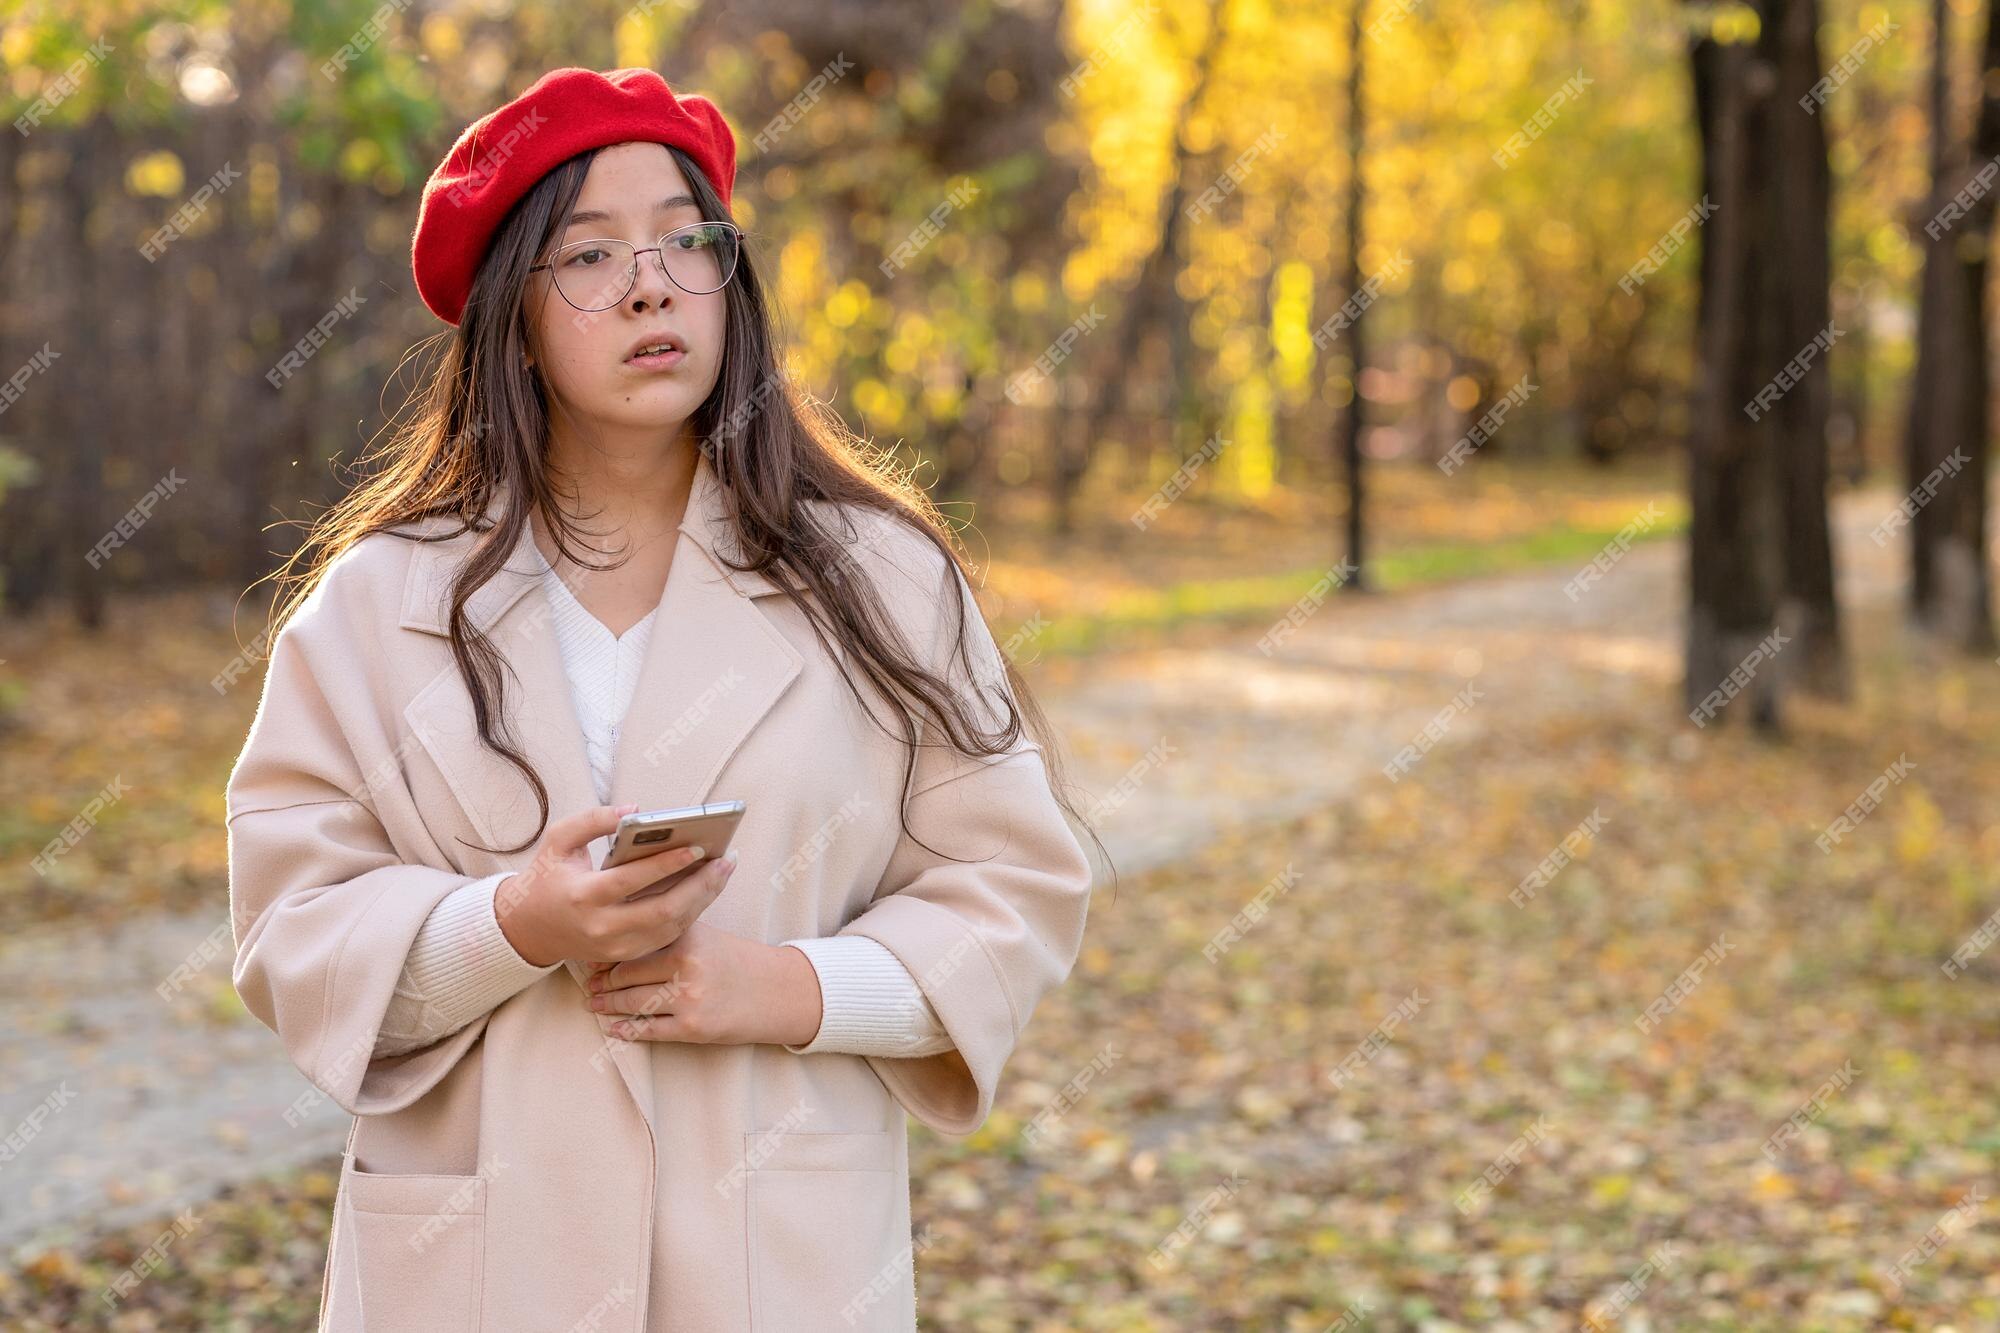 Una niña con un abrigo ligero y una boina roja camina en el parque de otoño sostiene un teléfono en la mano. | Foto Premium